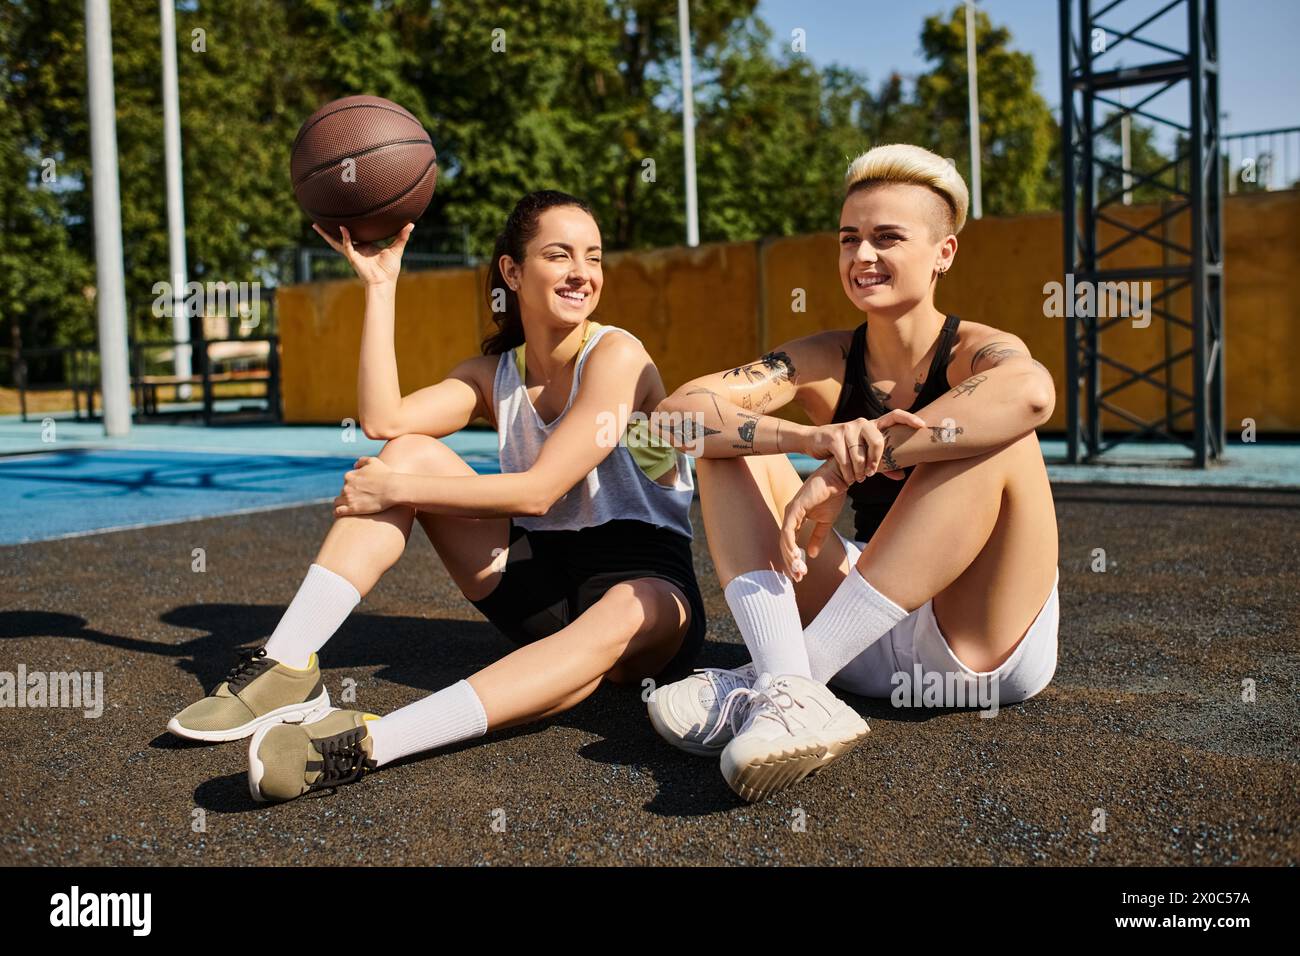 Deux jeunes femmes, athlétiques et animées, assises sur le sol avec un ballon de basket entre elles, profitant d'une journée d'été ensoleillée. Banque D'Images